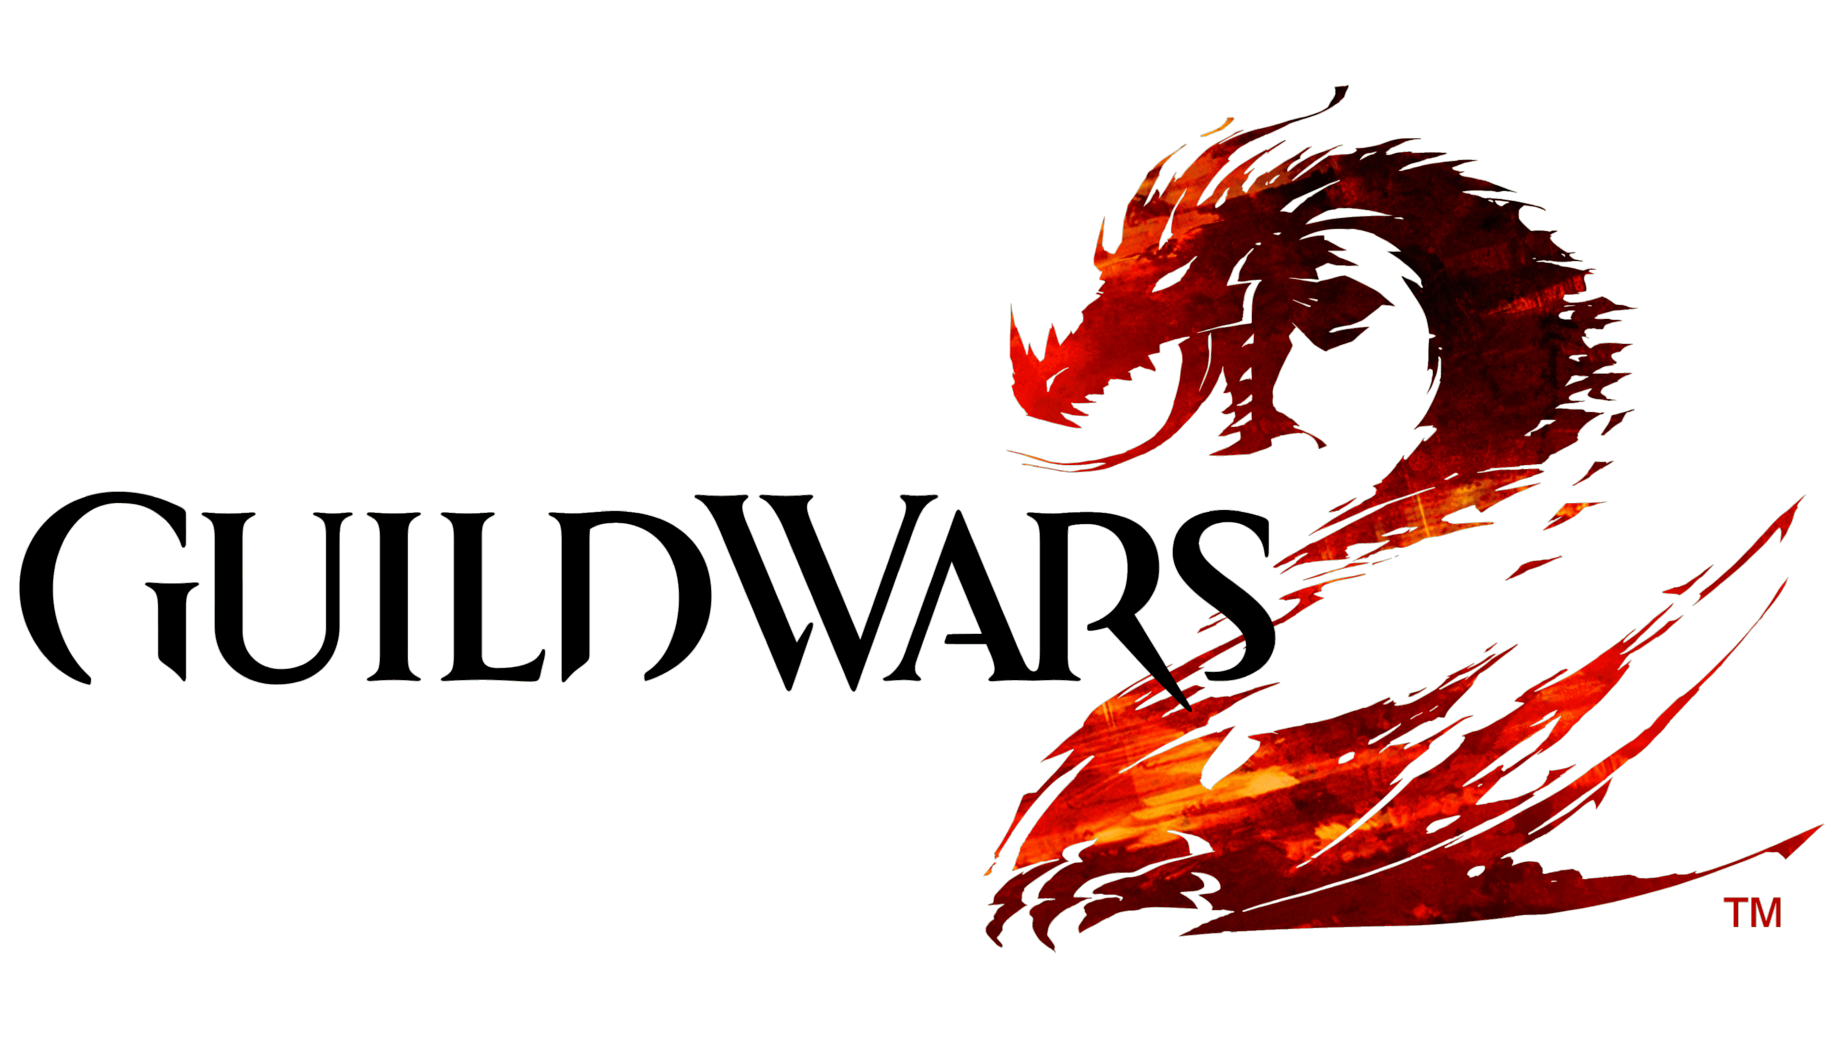 Guild wars sign